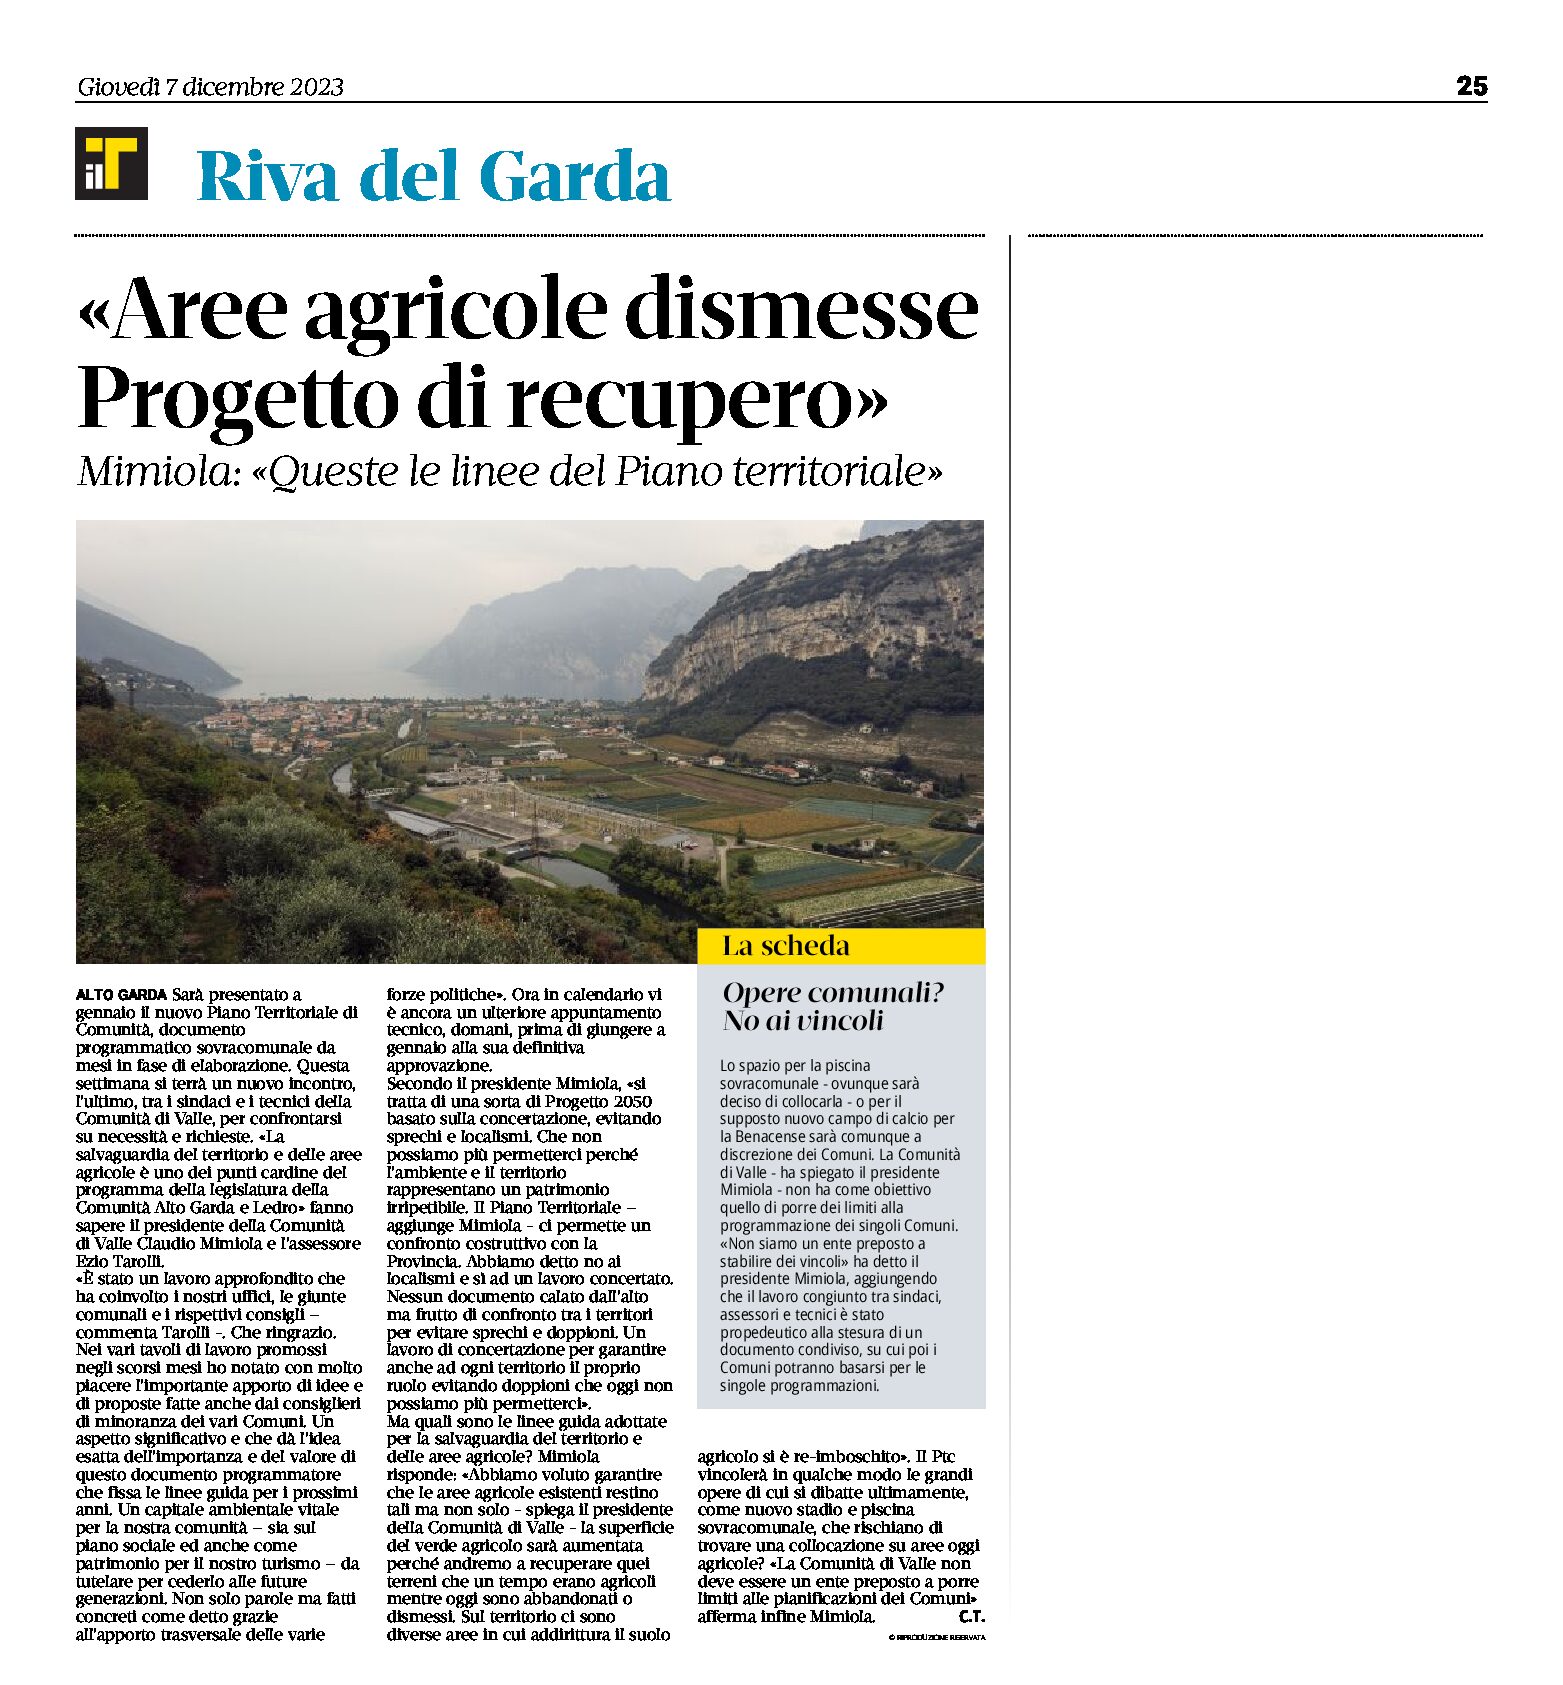 Riva: aree agricole dismesse, progetto di recupero